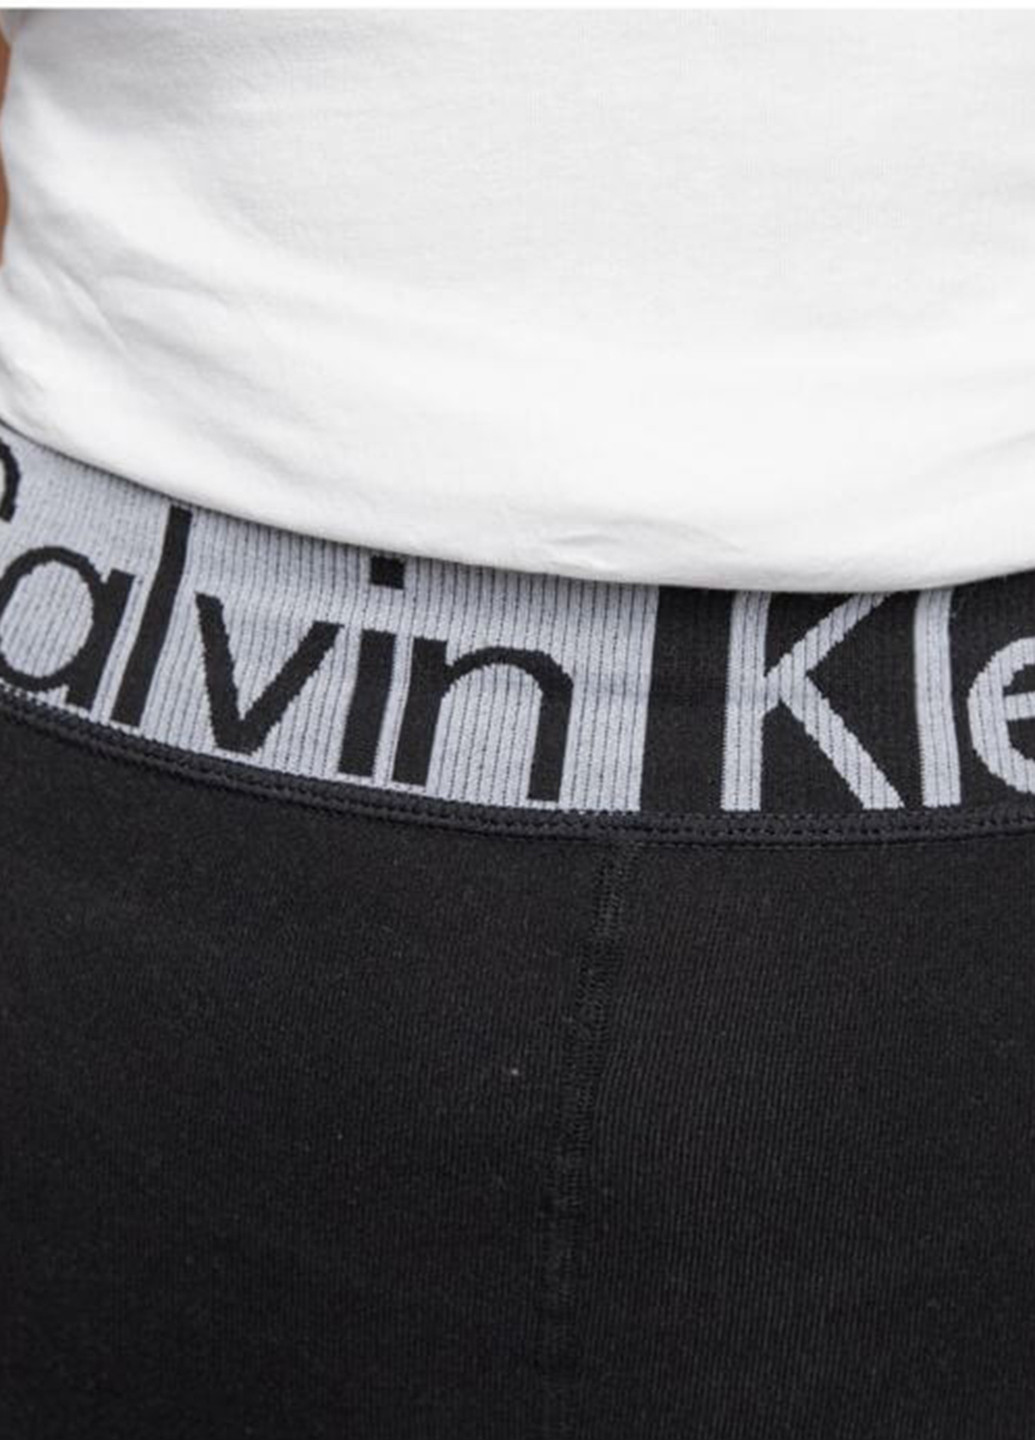 Черные демисезонные леггинсы Calvin Klein